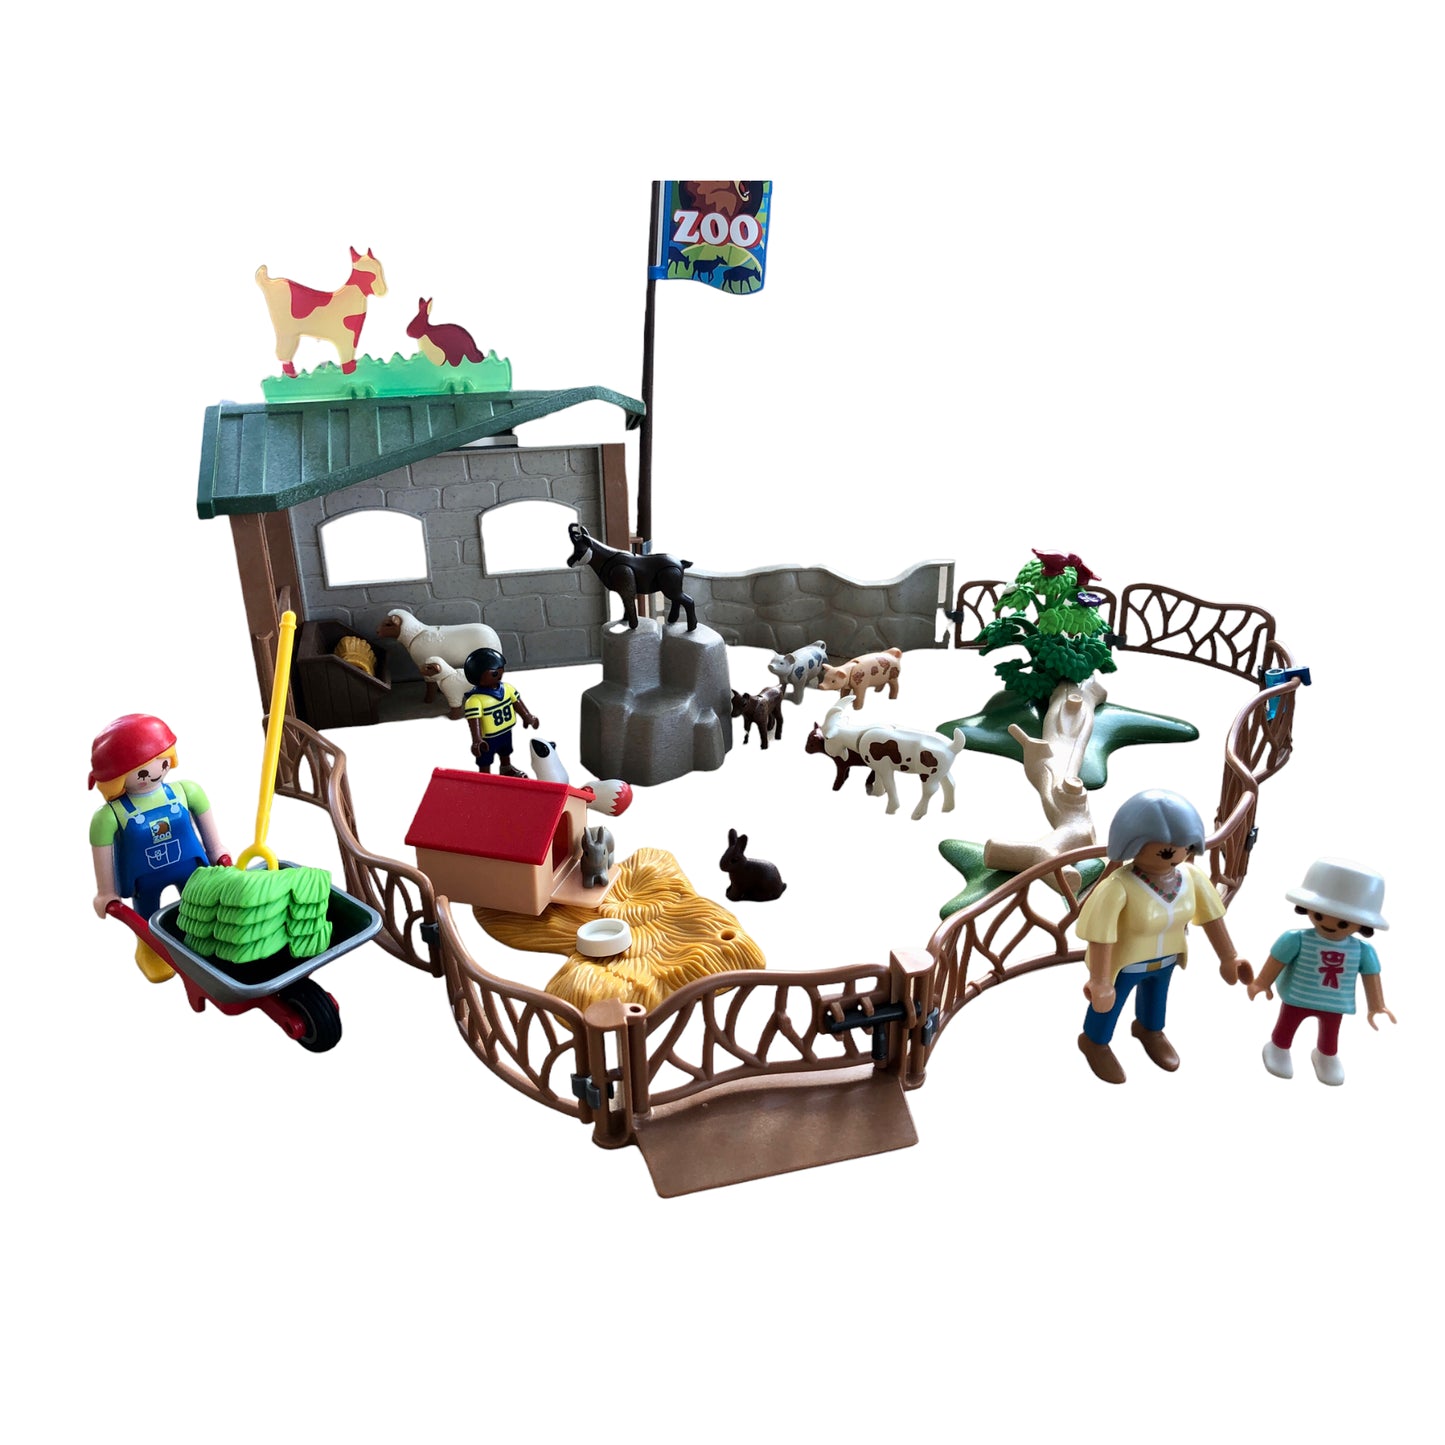 Playmobil 6635 City life zoo pour enfants